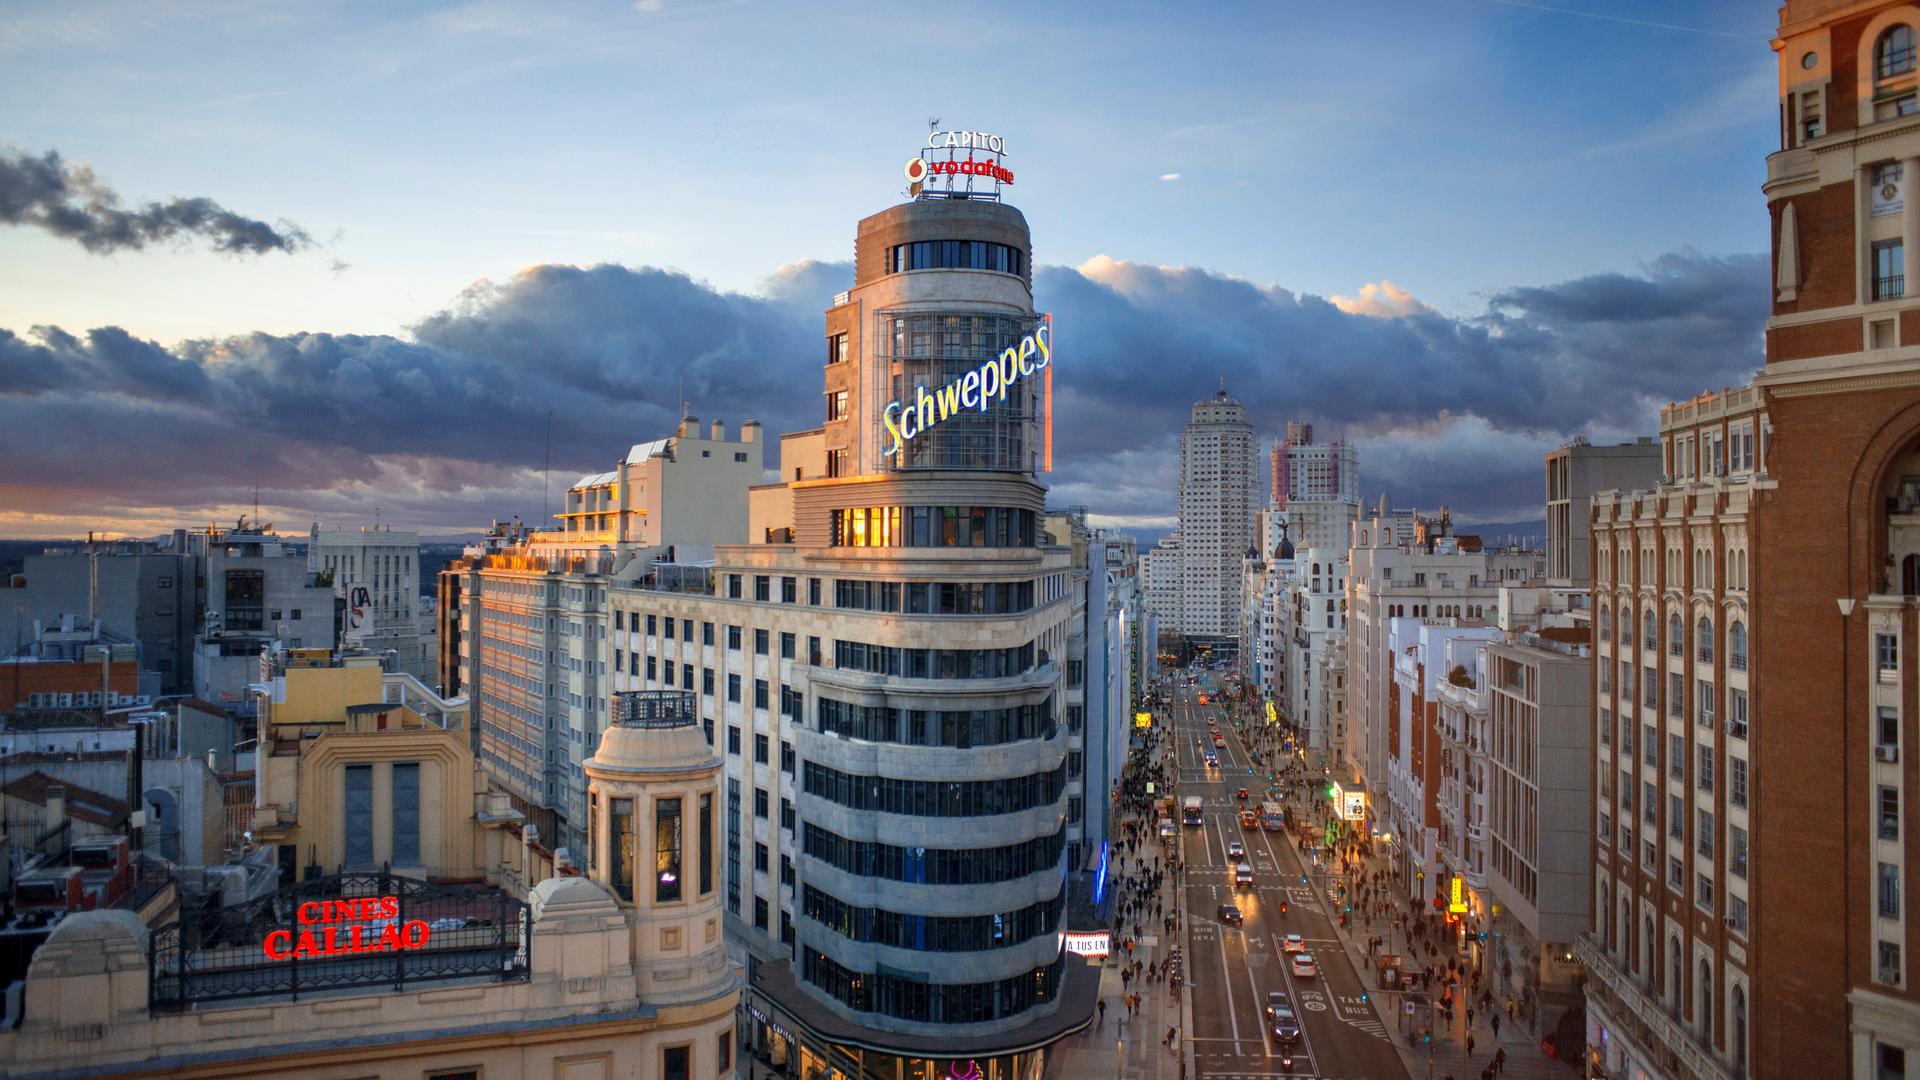 Das Schweppes-Gebäude in Madrid 